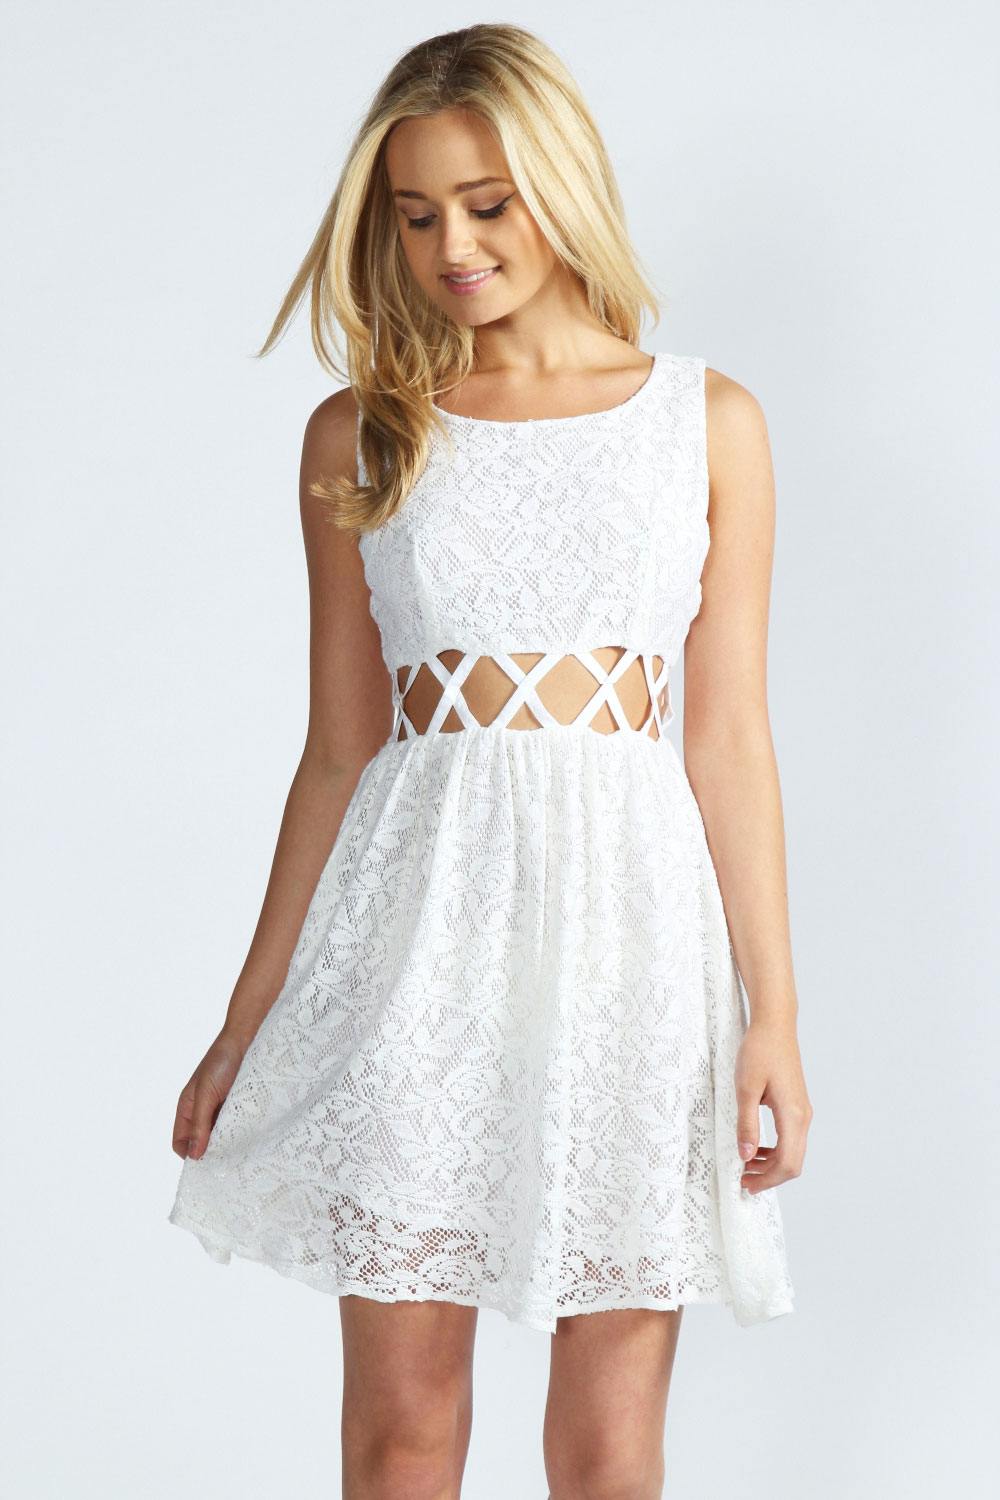 Летние белые платья: очарование и женственность белоснежных нарядов